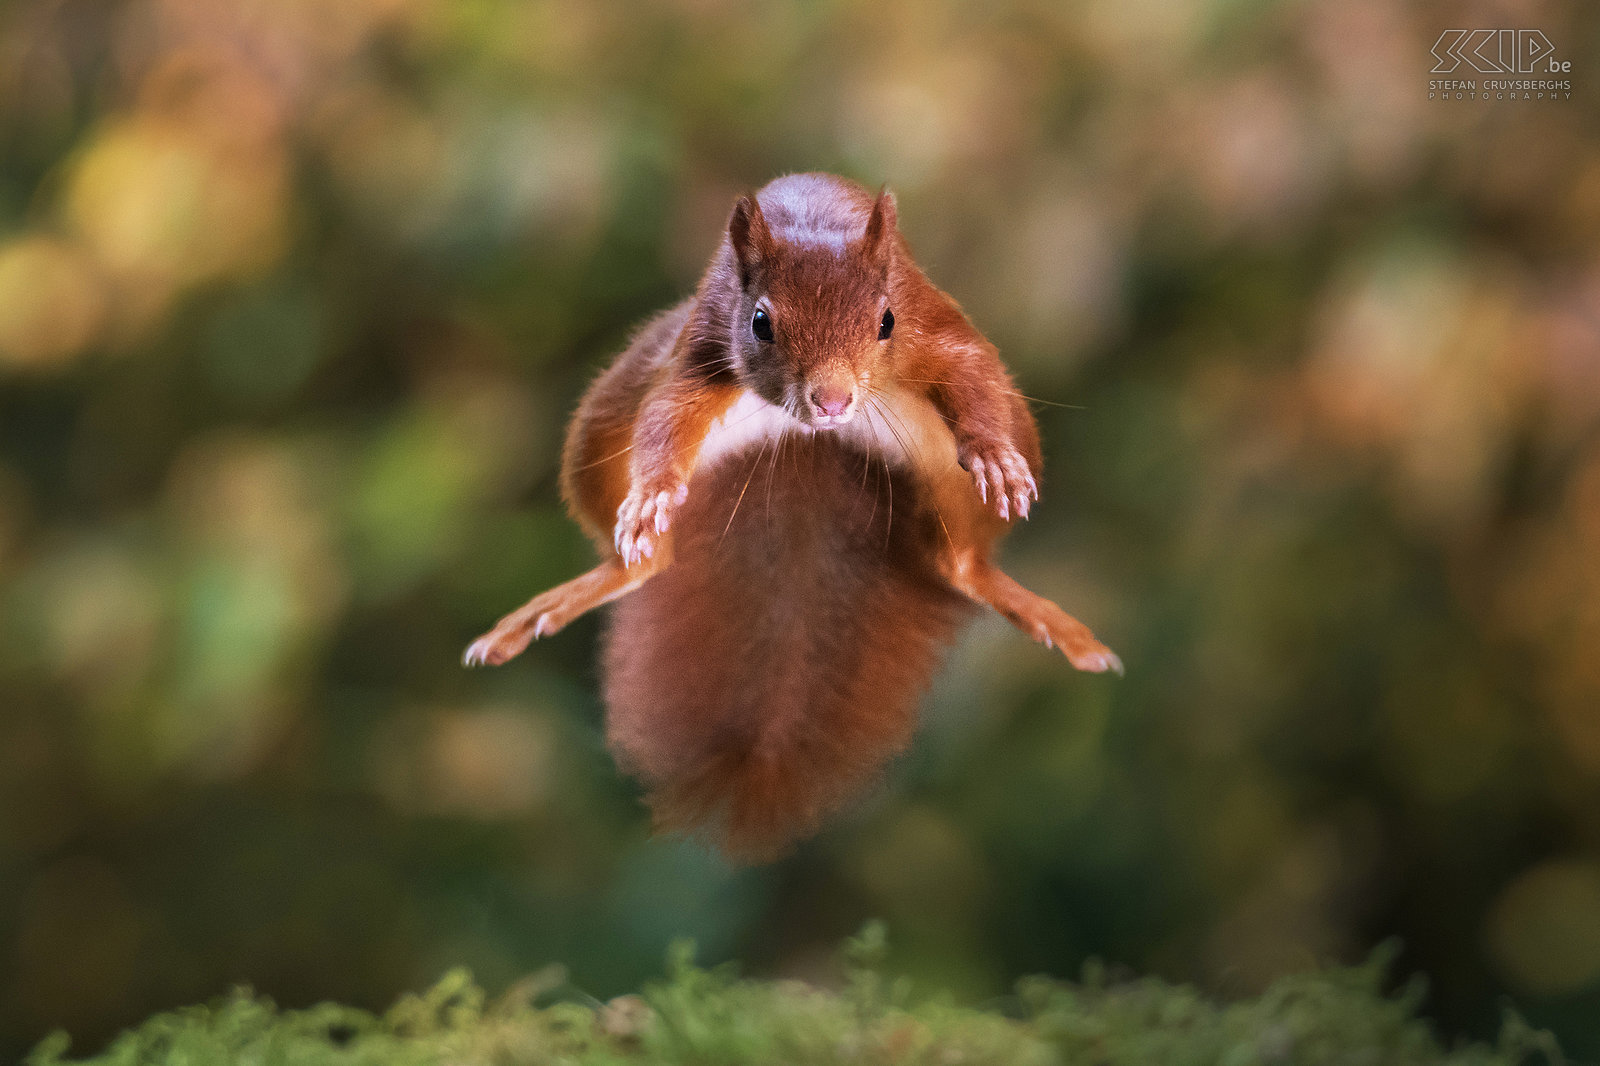 Springende eekhoorn Eekhoorns kunnen heel ver springen en het is een uitdaging om dit op foto vast te leggen. Tijdens een sprong spreiden ze hun ledematen. Stefan Cruysberghs